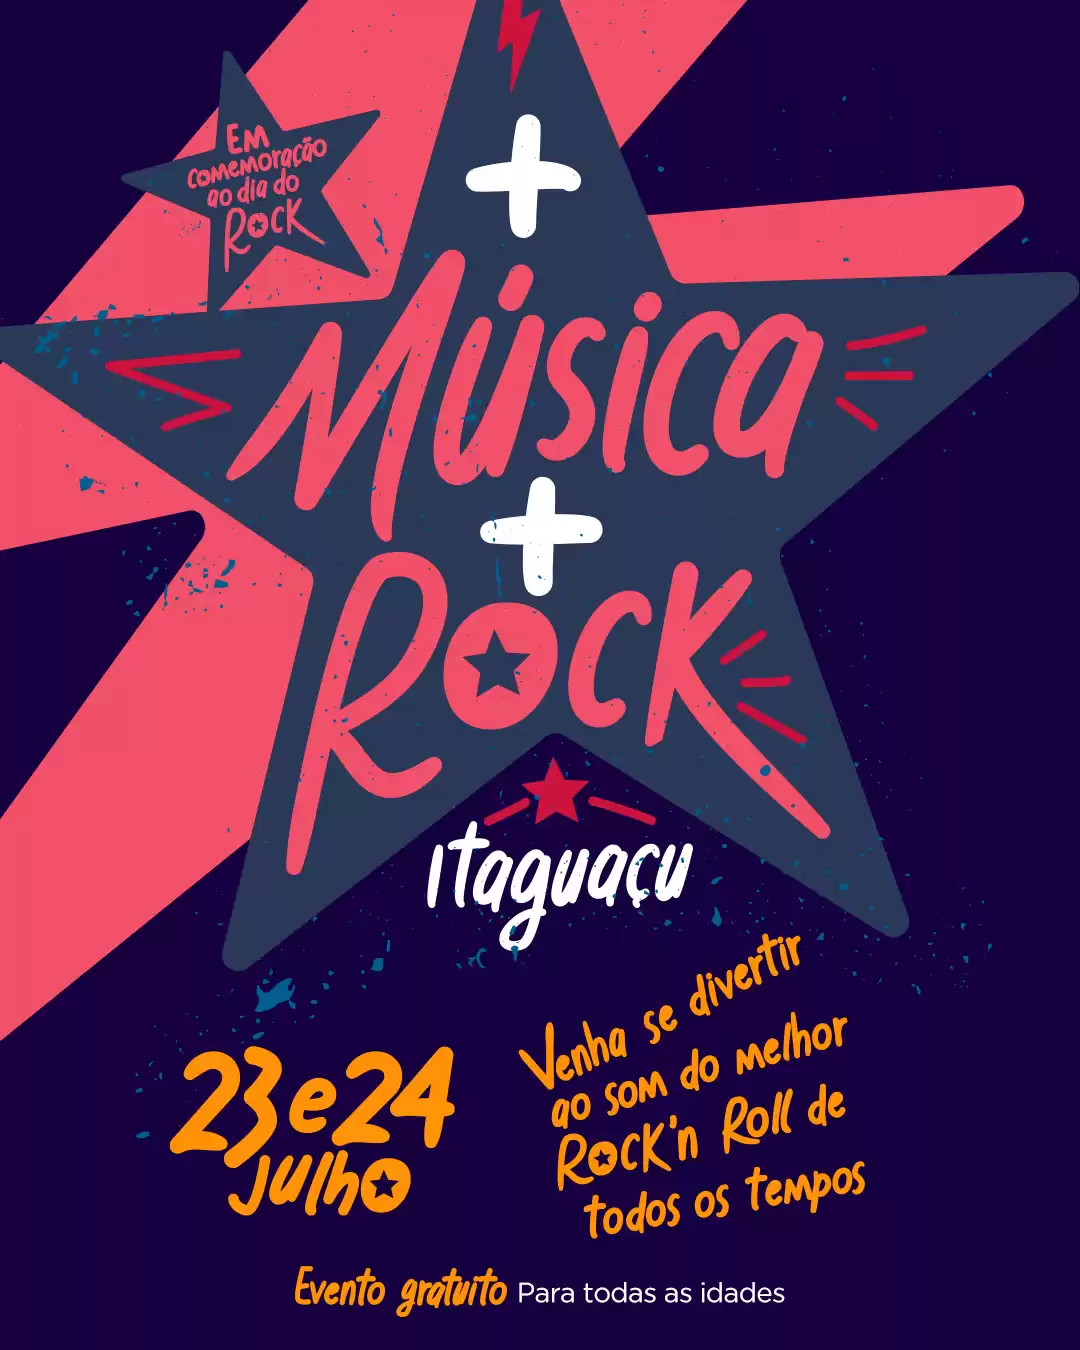 Rock n’ Roll invade o Shopping Itaguaçu neste final de semana